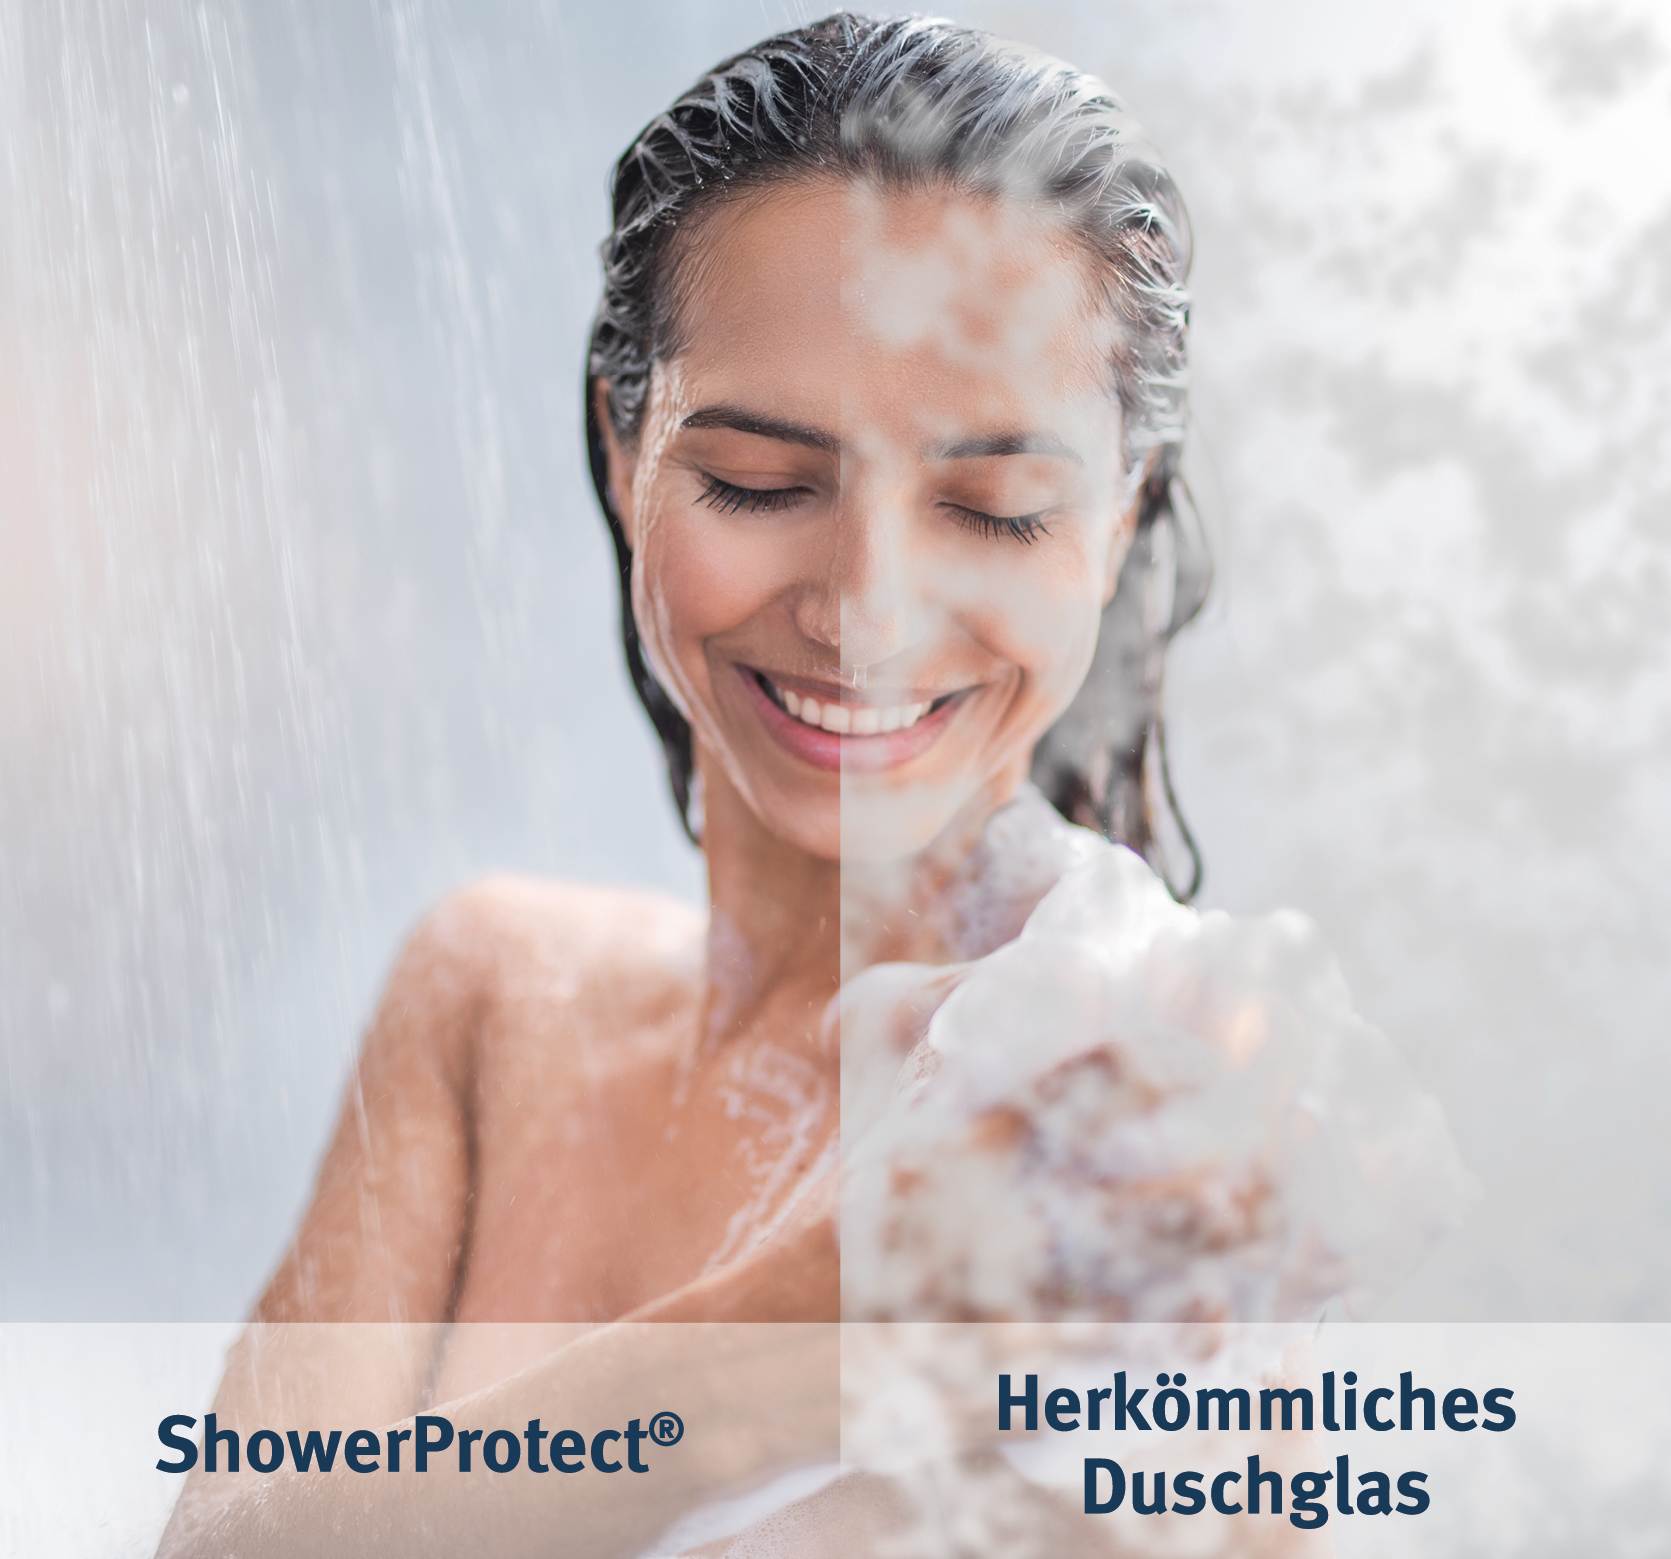 ShowerProtect, das Duschglas mit dauerhafter Brillanz und